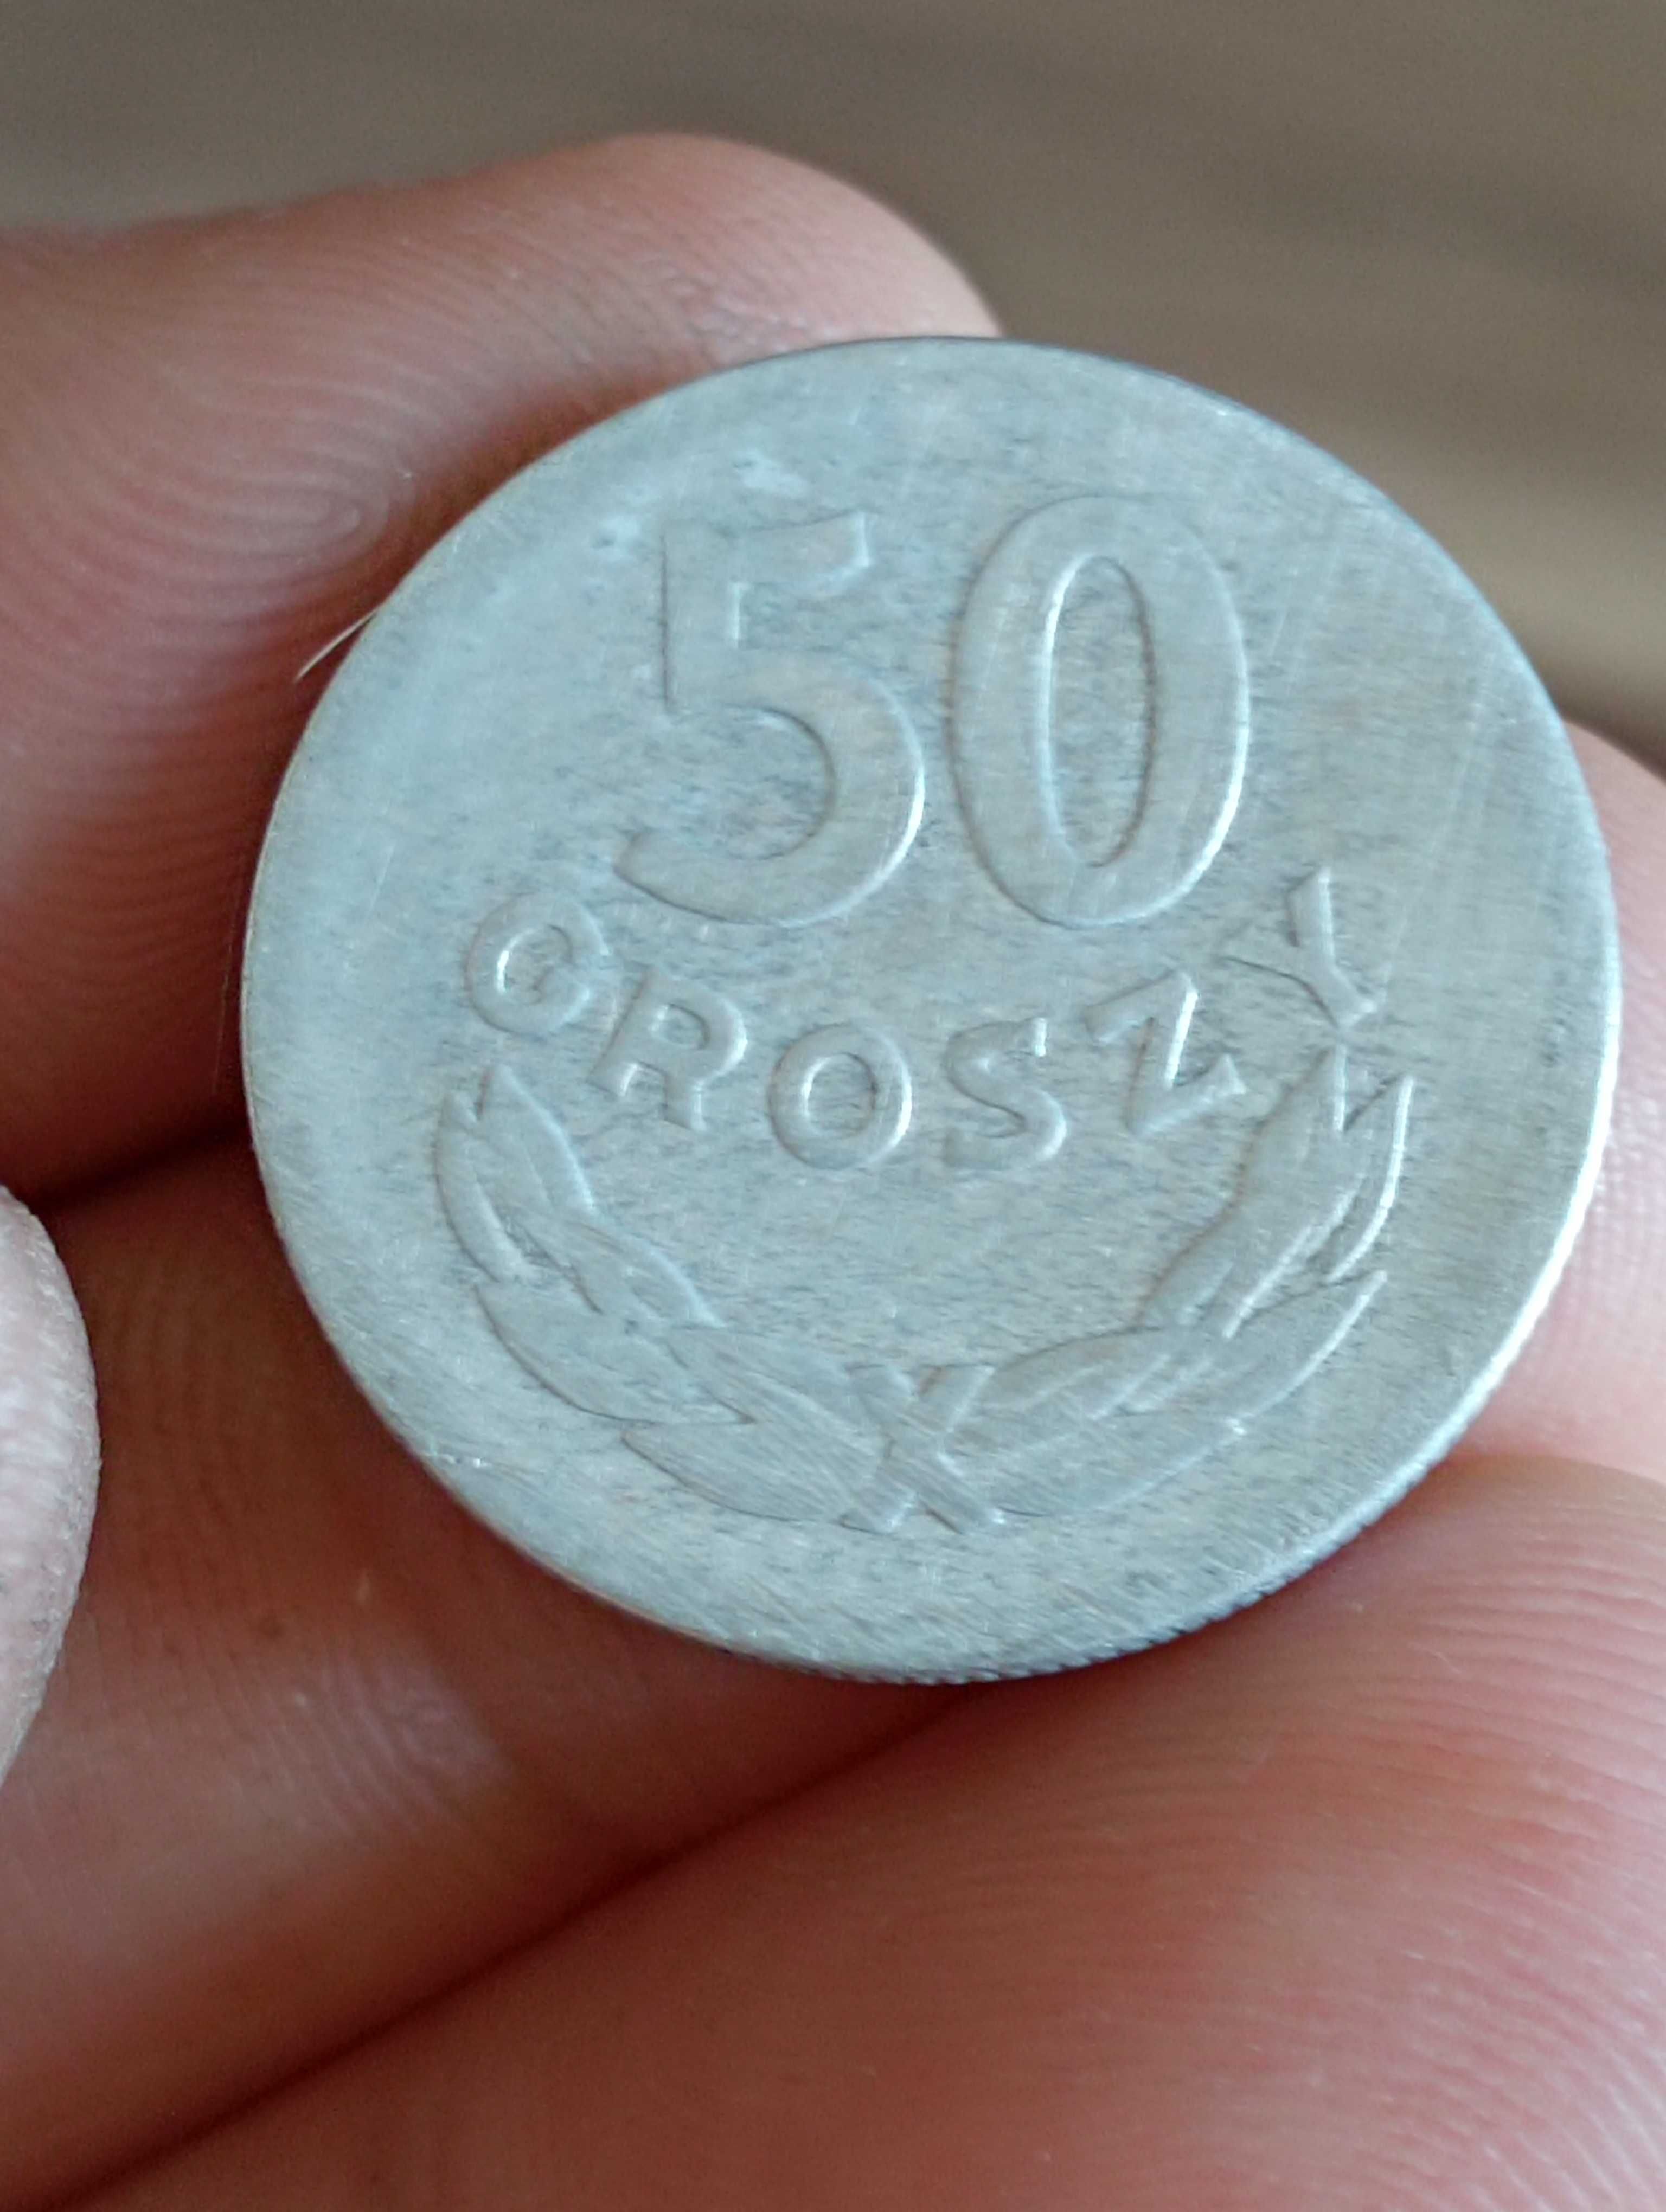 Sprzedam monete yy 50 groszy 1957 r